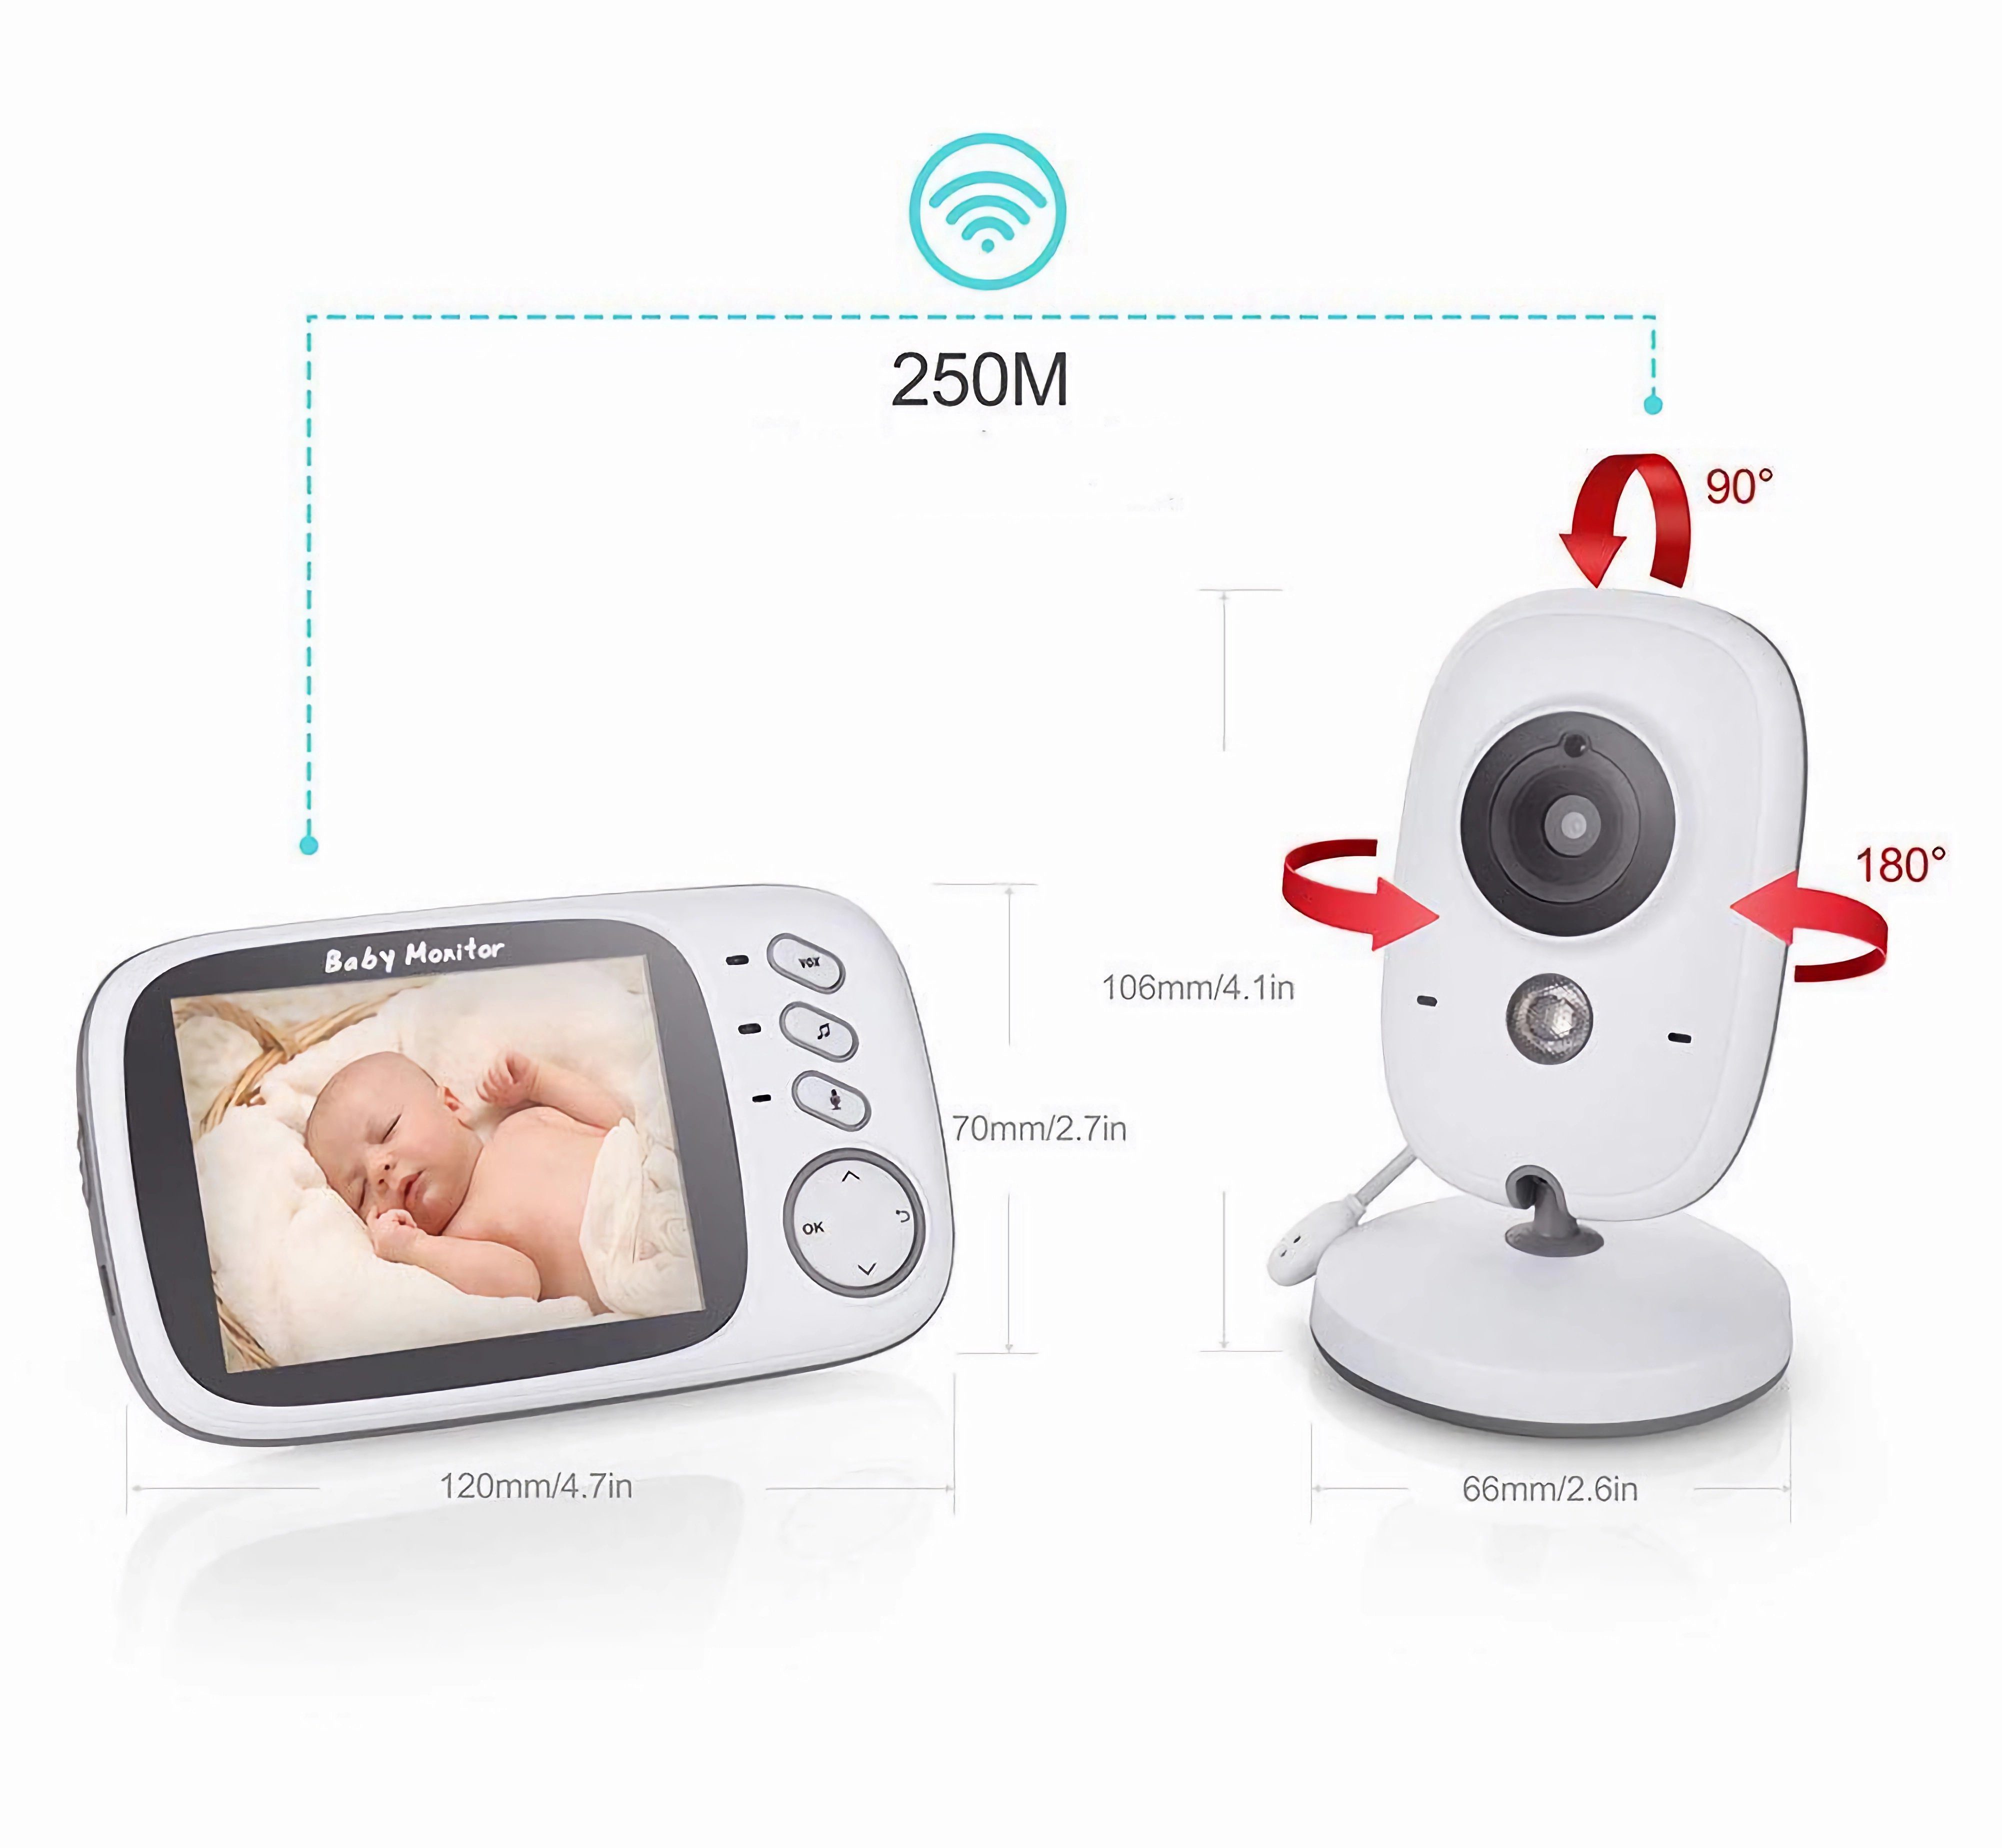 BUMHUM Video-Babyphone Video-Babyphone Babyphone 3.2-Zoll-LCD-Bildschirm, Schlaflieder, Gegensprechfunktion Zwei-Wege-Audio, Temperaturanzeige, Großer Kamera, Extra Infrarot-Nachtsicht, mit